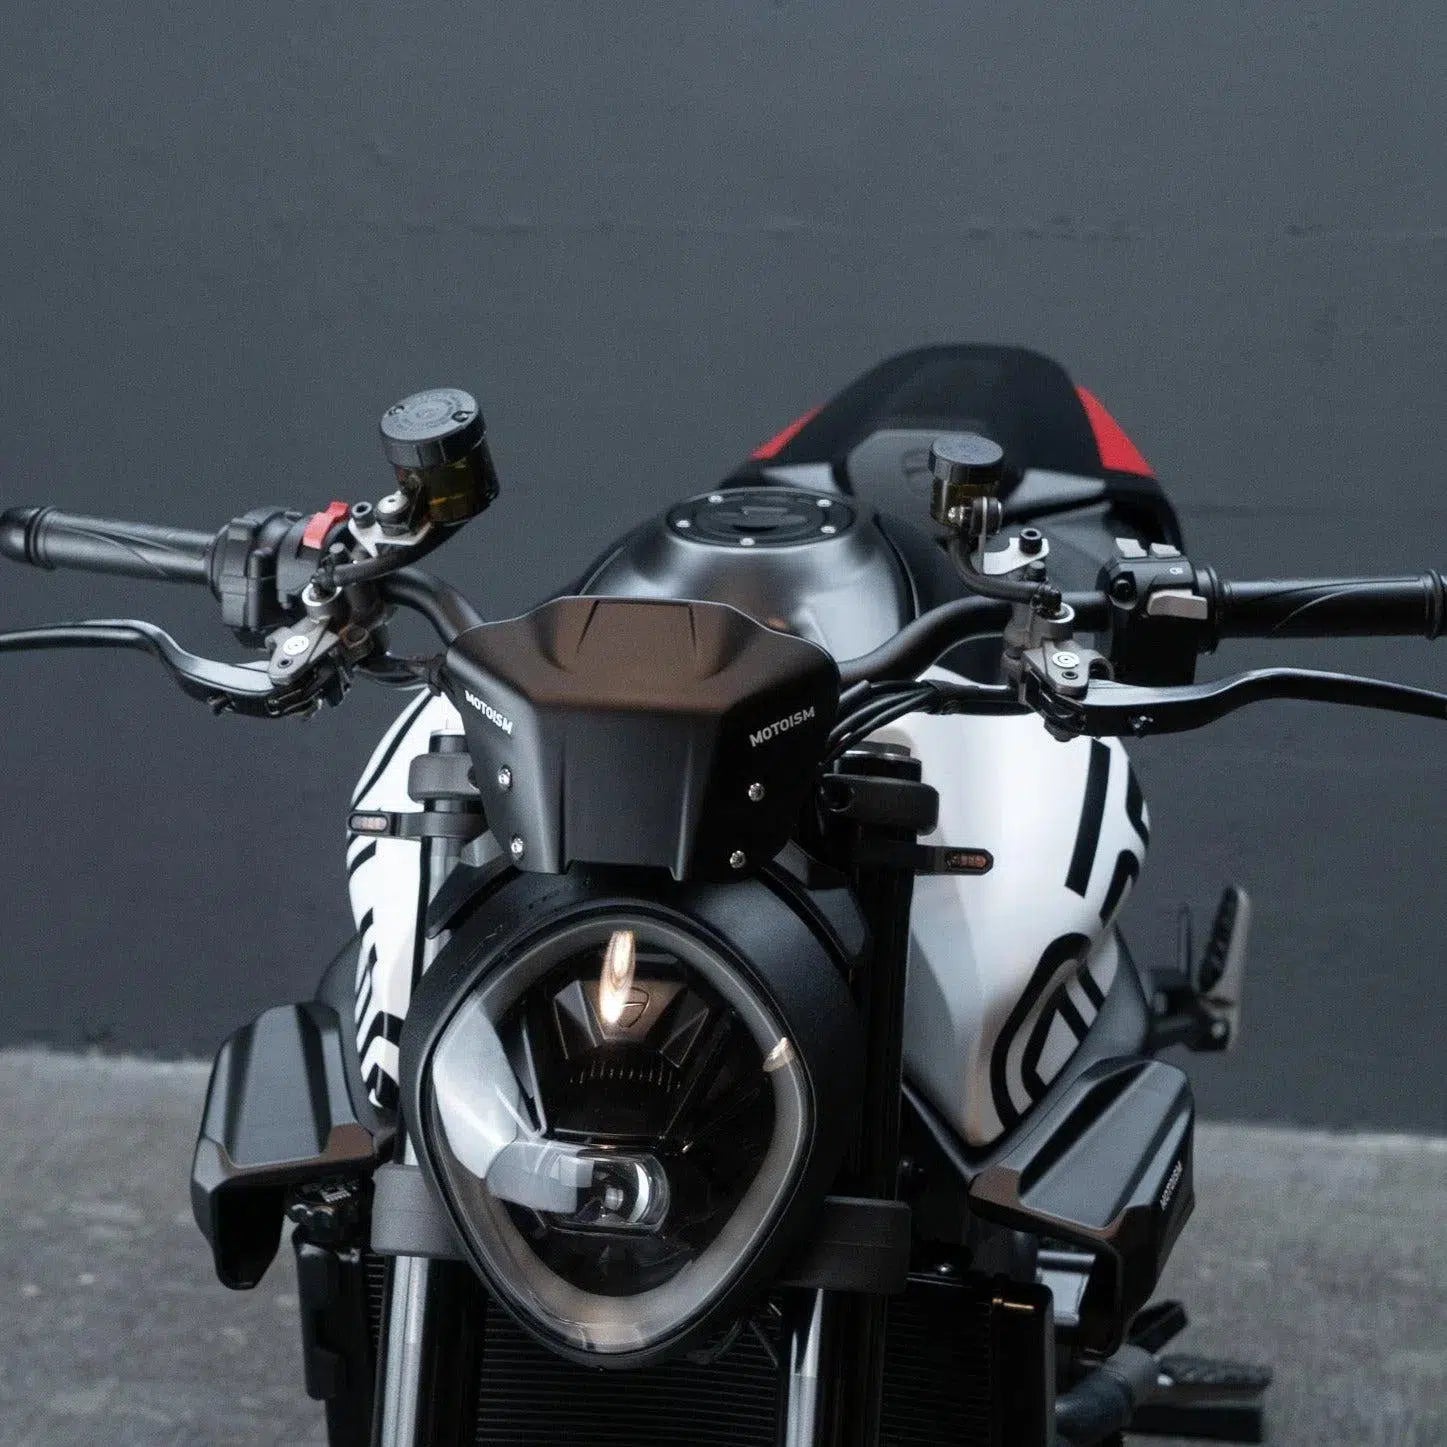 Ducati Monster Starter Bundle